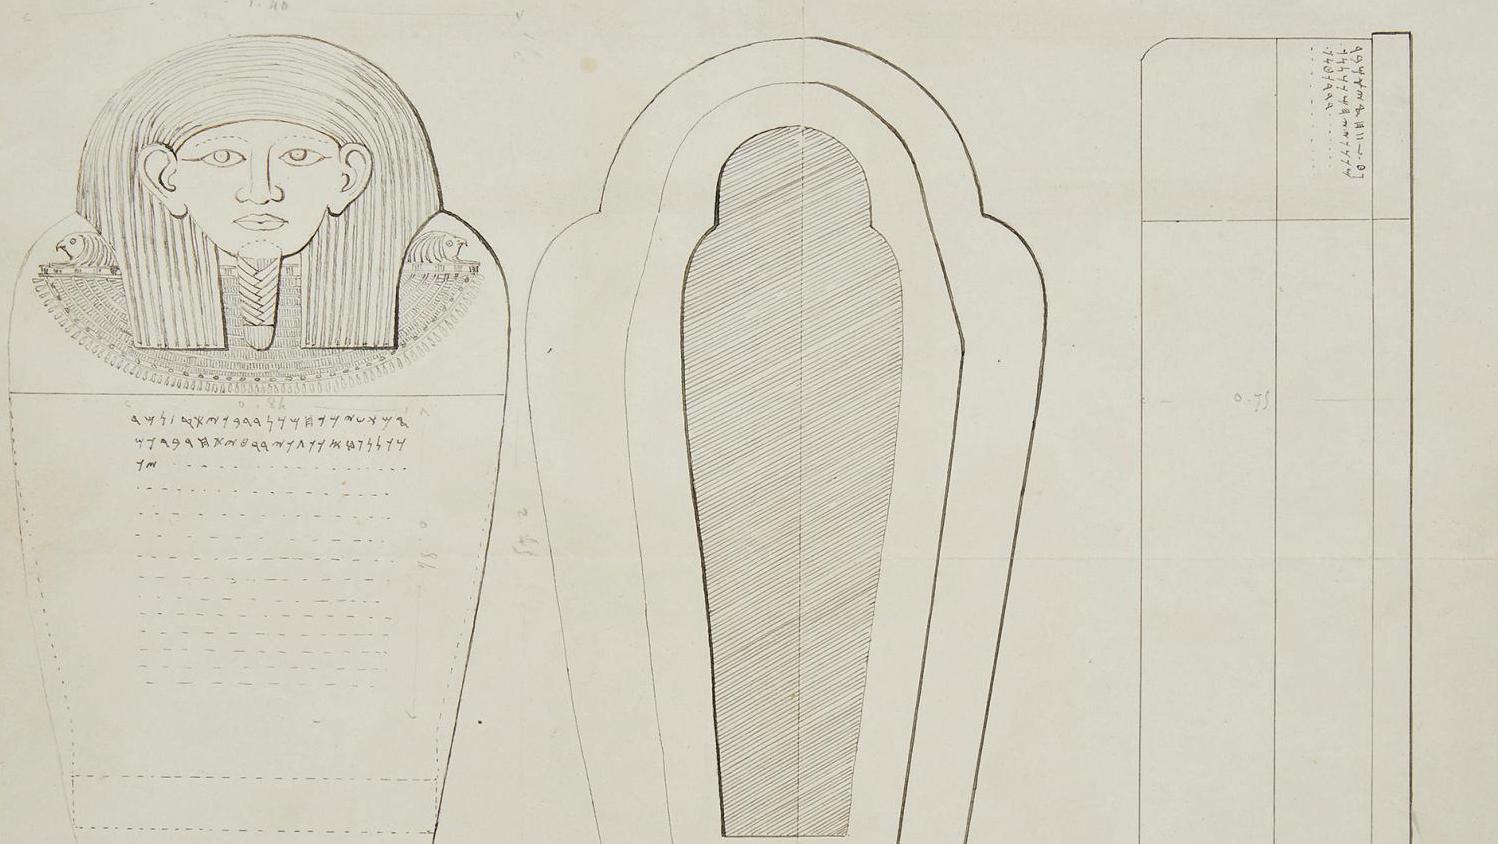 Dossier d’archives et de philologie relatif à la découverte et au don du sarcophage... Retour aux musées pour le duc de Luynes